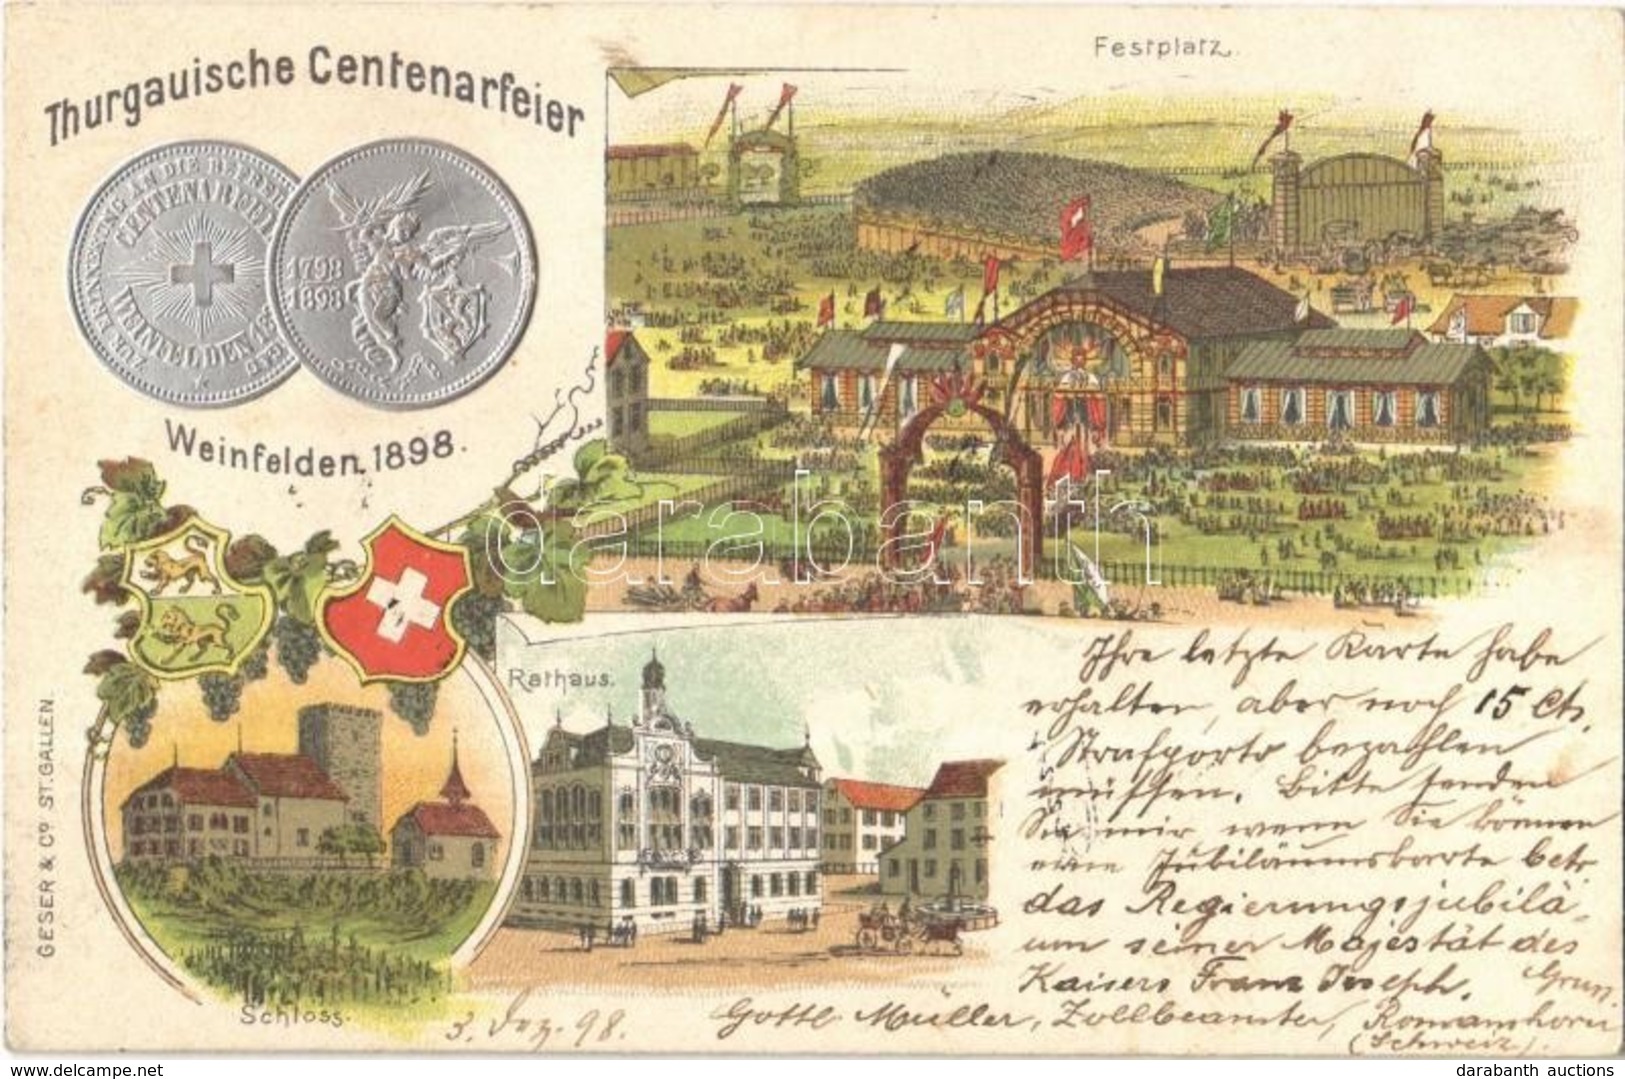 T2/T3 1898 Weinfelden, Thurgauische Centenarfeier, Festplatz, Rathaus, Schloss / Thurgau Centenary Celebration, Festival - Unclassified